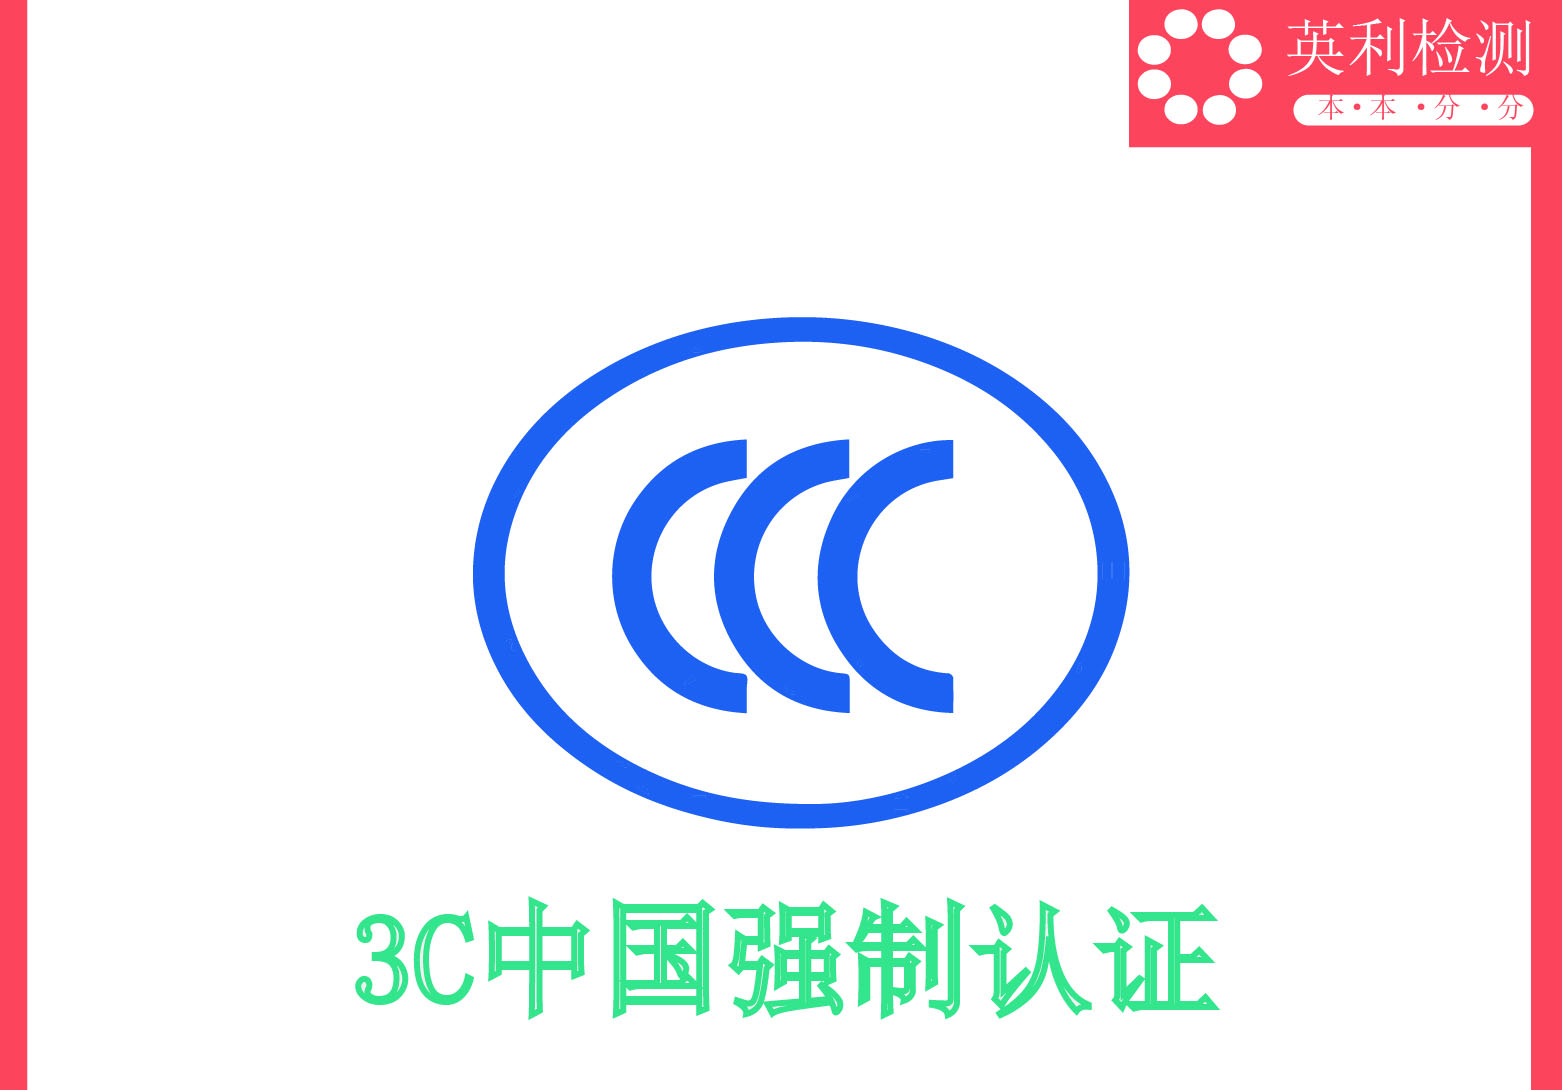 CCC-英利檢測.jpg